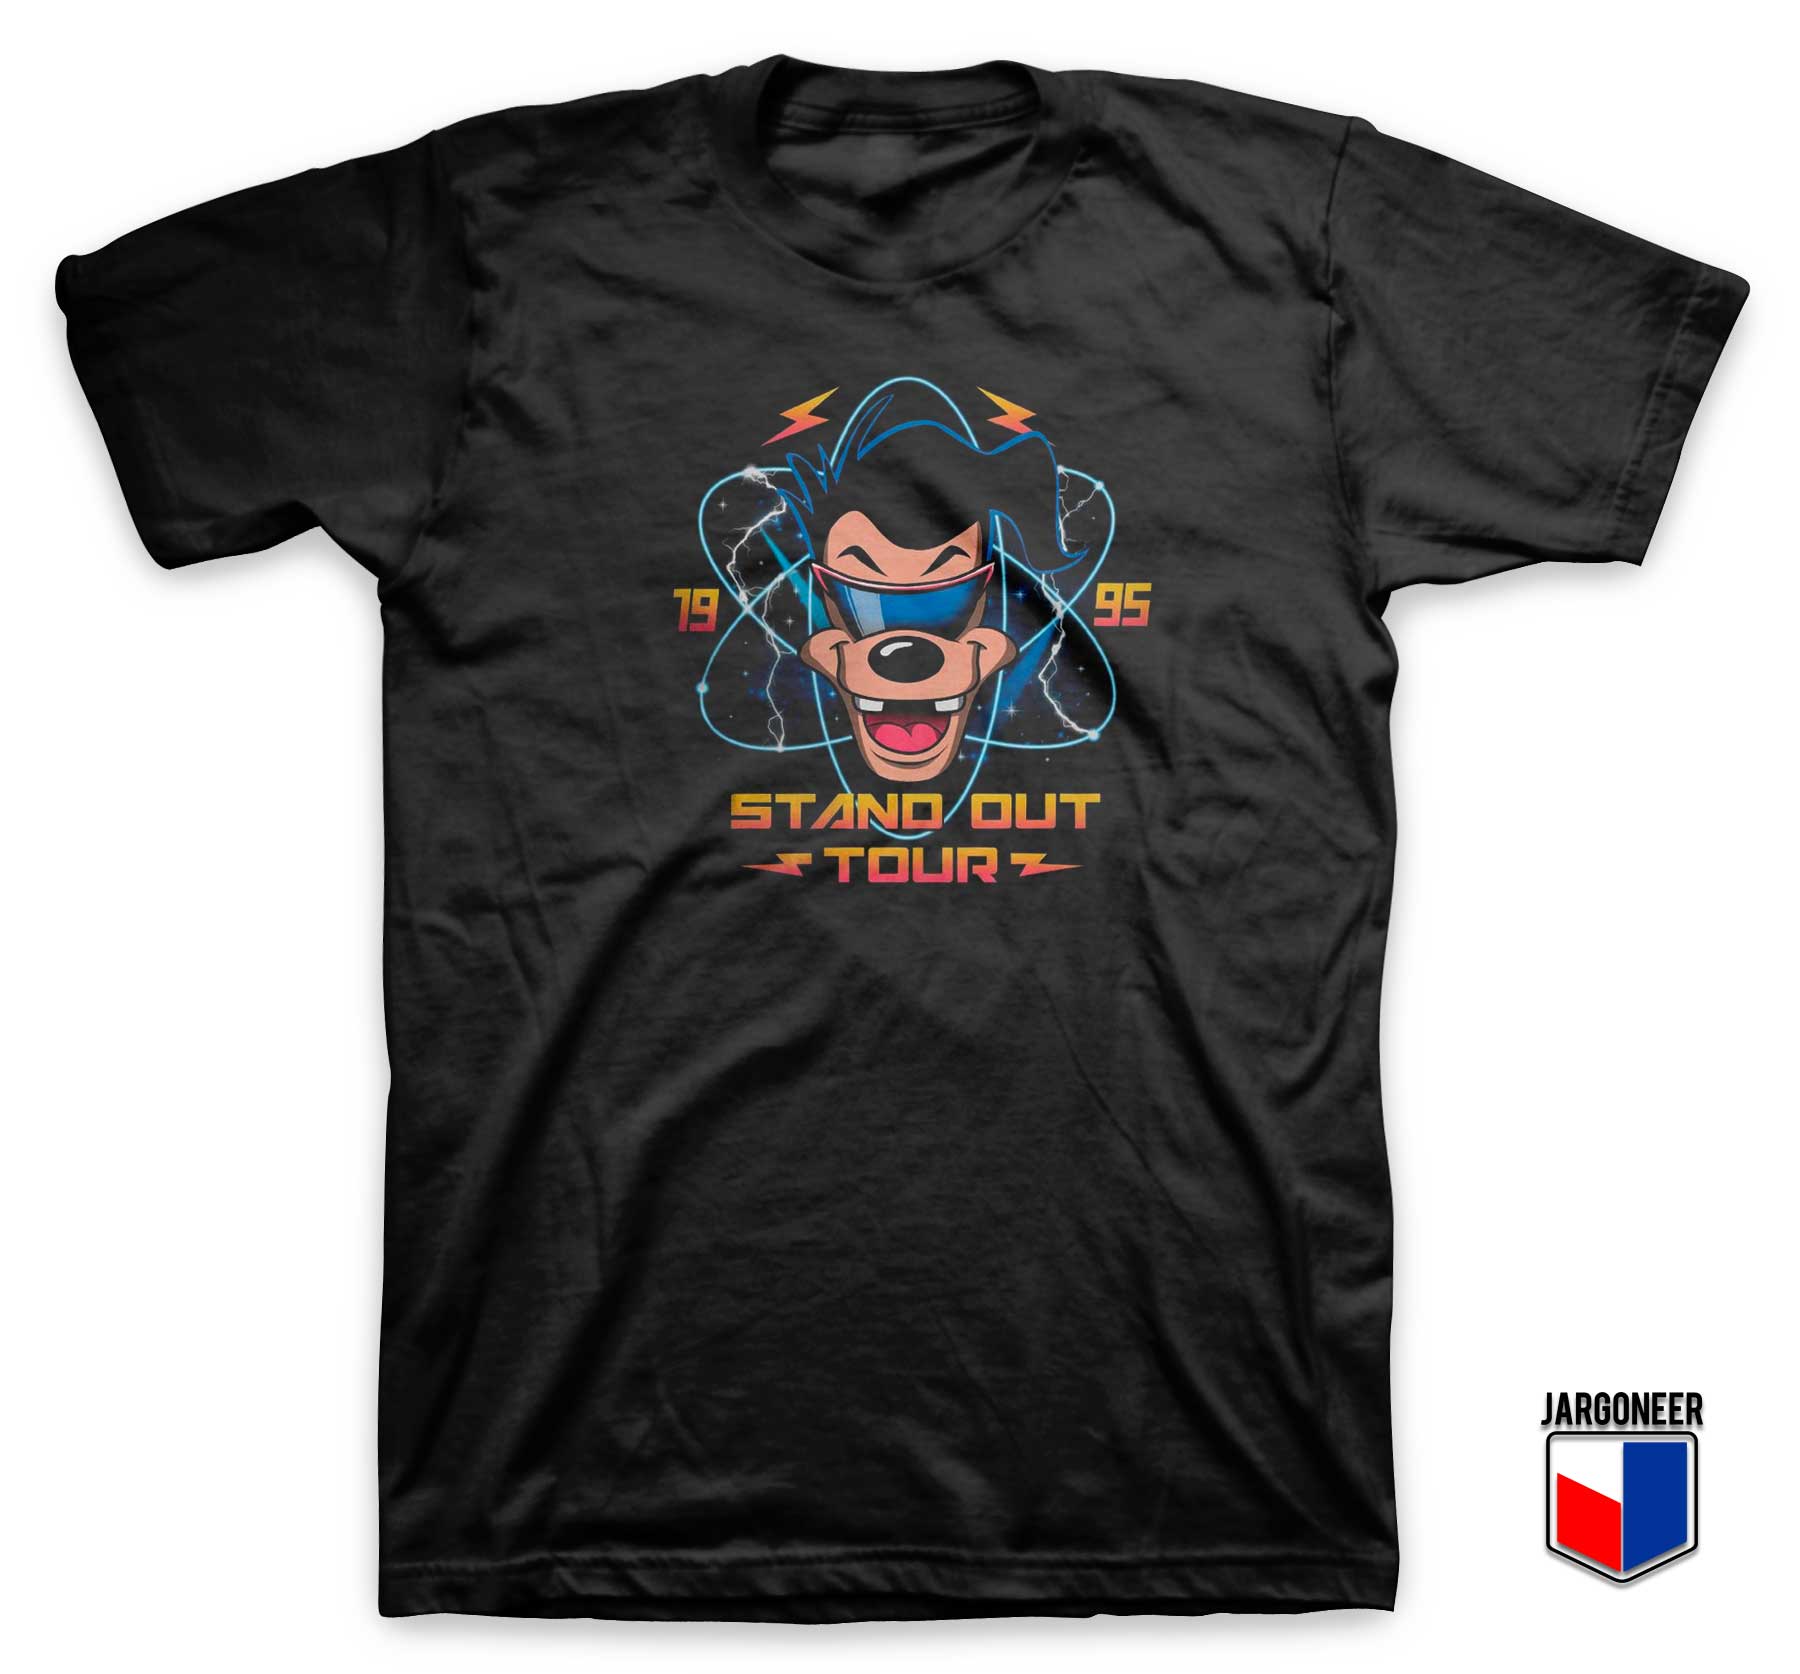 Stand Out Tour 1995 T Shirt - Shop Unique Graphic Cool Shirt Designs